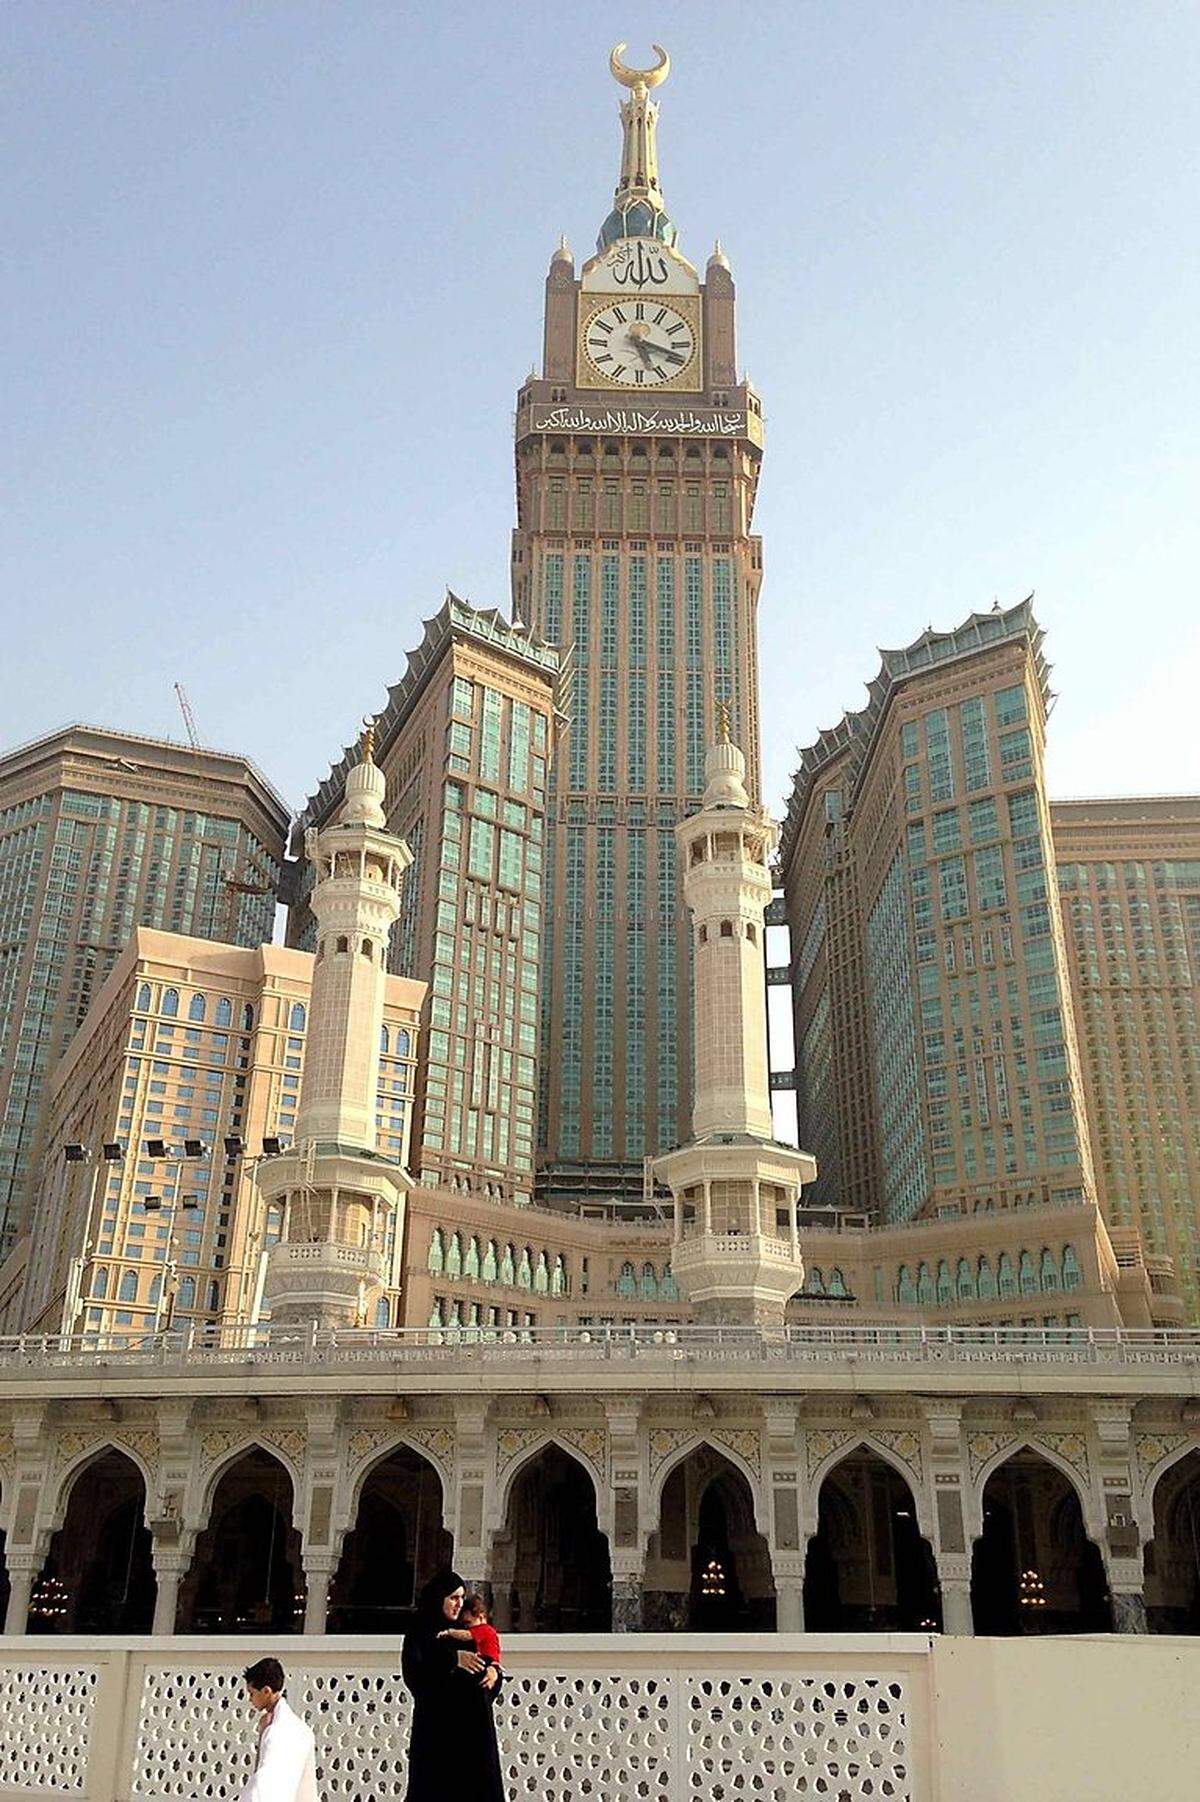 Von 2011 bis zur Fertigstellung des Shanghai Tower war das "Mecca Royal Clock Tower Hotel" (Bildmitte) das zweithöchste Gebäude der Welt - mit 601 Metern Höhe und 120 Etage. Heute ist es das dritthöchste Haus. Der Turm ist Teil des "Abraj Al Bait Towers"-Ensemble im saudi-arabischen Pilgerort Mekka - und steht dabei direkt neben der Heiligen Moschee. Von den Architekten "Dar al-Handasah Shair &amp; Partners" geplant, soll das Haus vor allem die vielen Pilger aufnehmen - die Nutzfläche von einer Million Quadratmetern hilft dabei. 30.000 Menschen können in dem Hotel bei Vollbelegung bleiben.